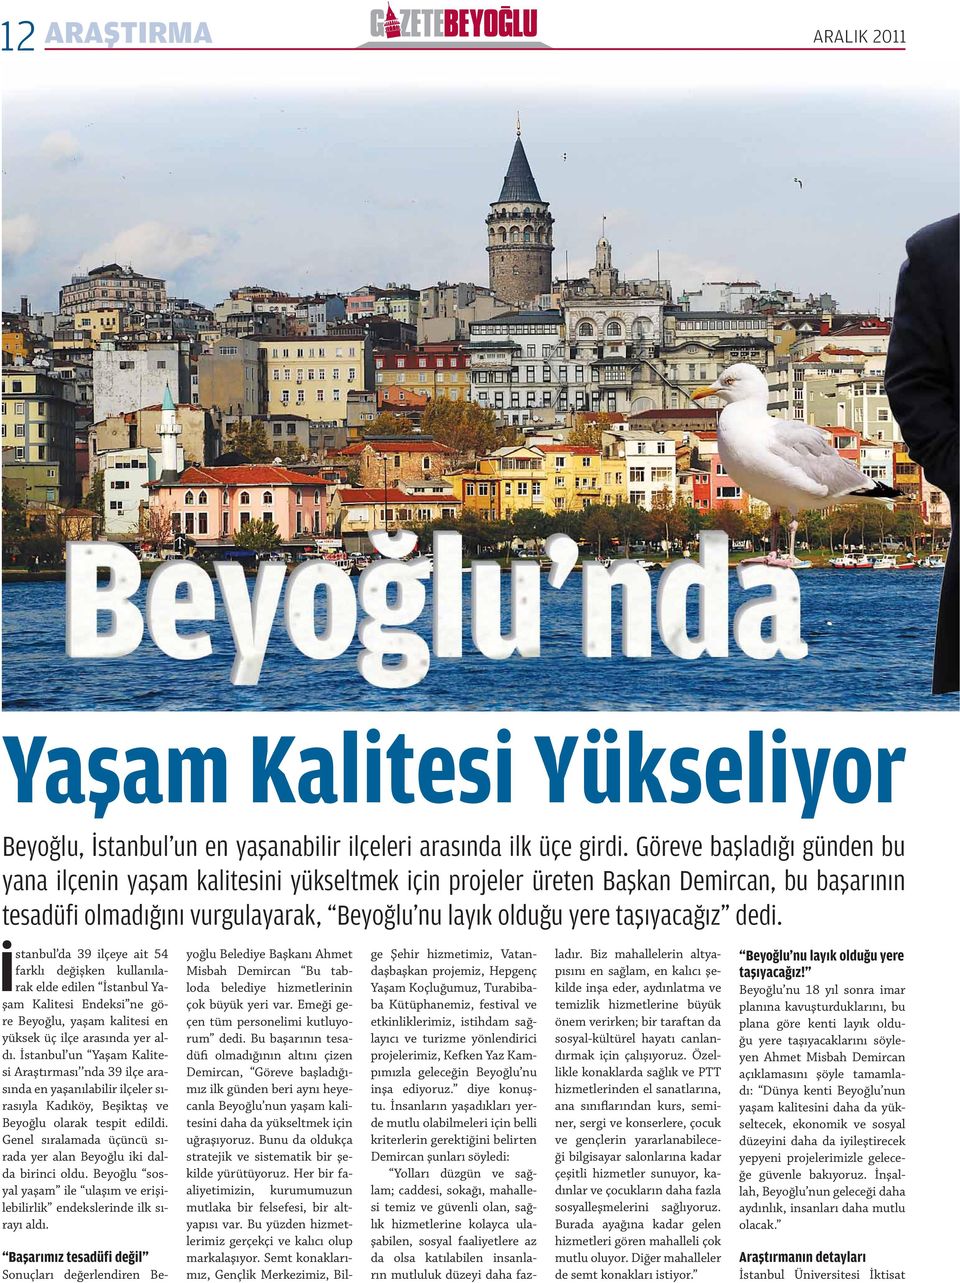 İstanbul da 39 ilçeye ait 54 farklı değişken kullanılarak elde edilen İstanbul Yaşam Kalitesi Endeksi ne göre Beyoğlu, yaşam kalitesi en yüksek üç ilçe arasında yer aldı.